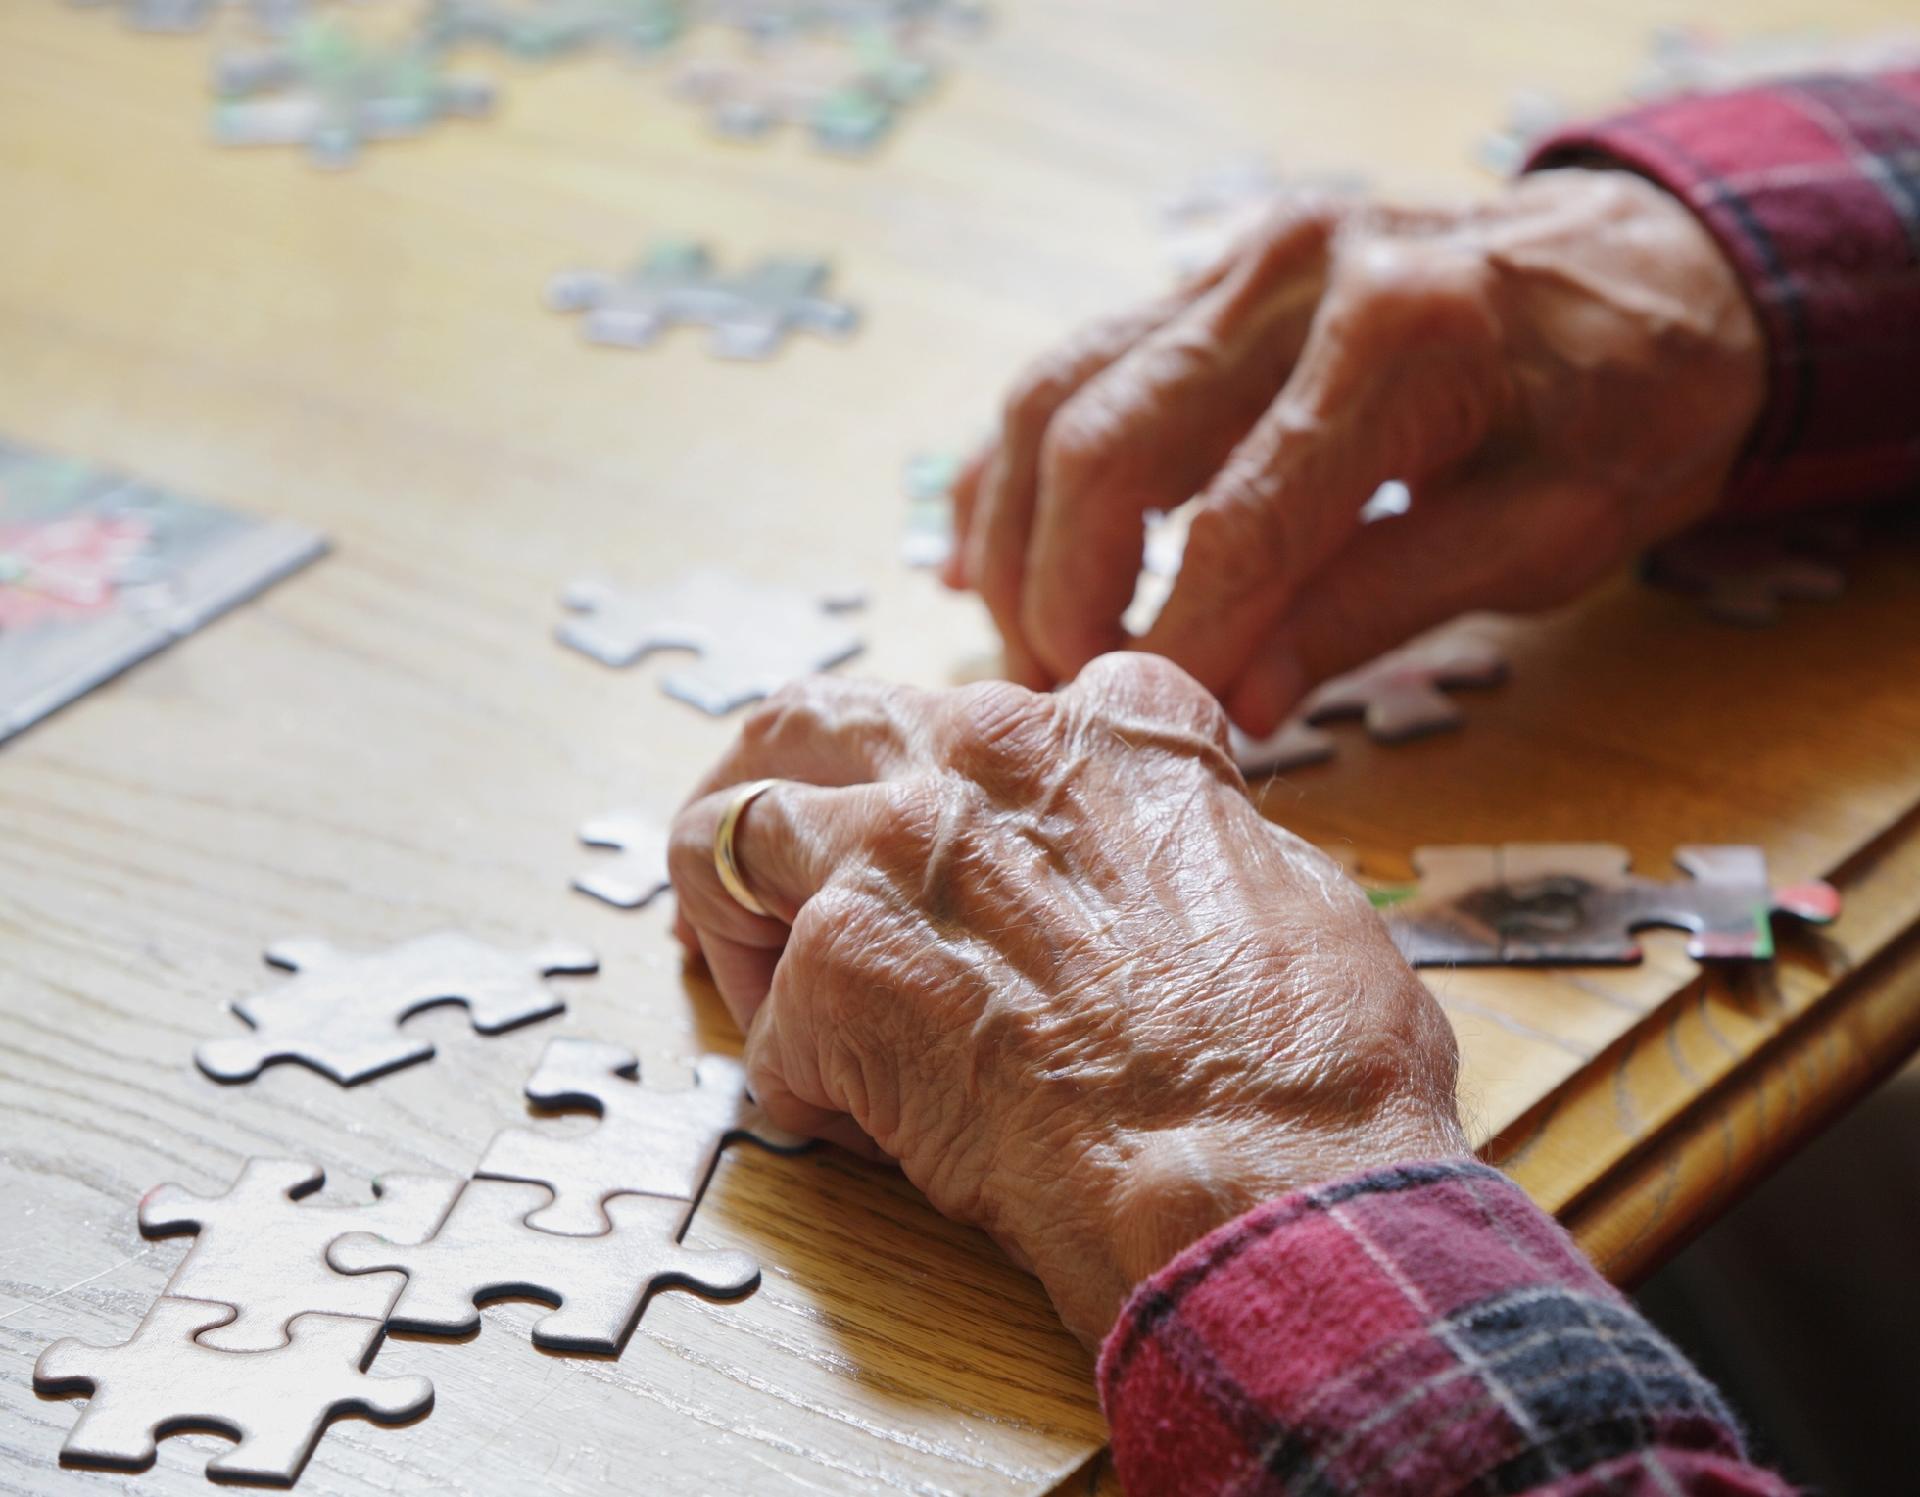 Montar quebra-cabeças digitais ajuda a estimular memória de idosos